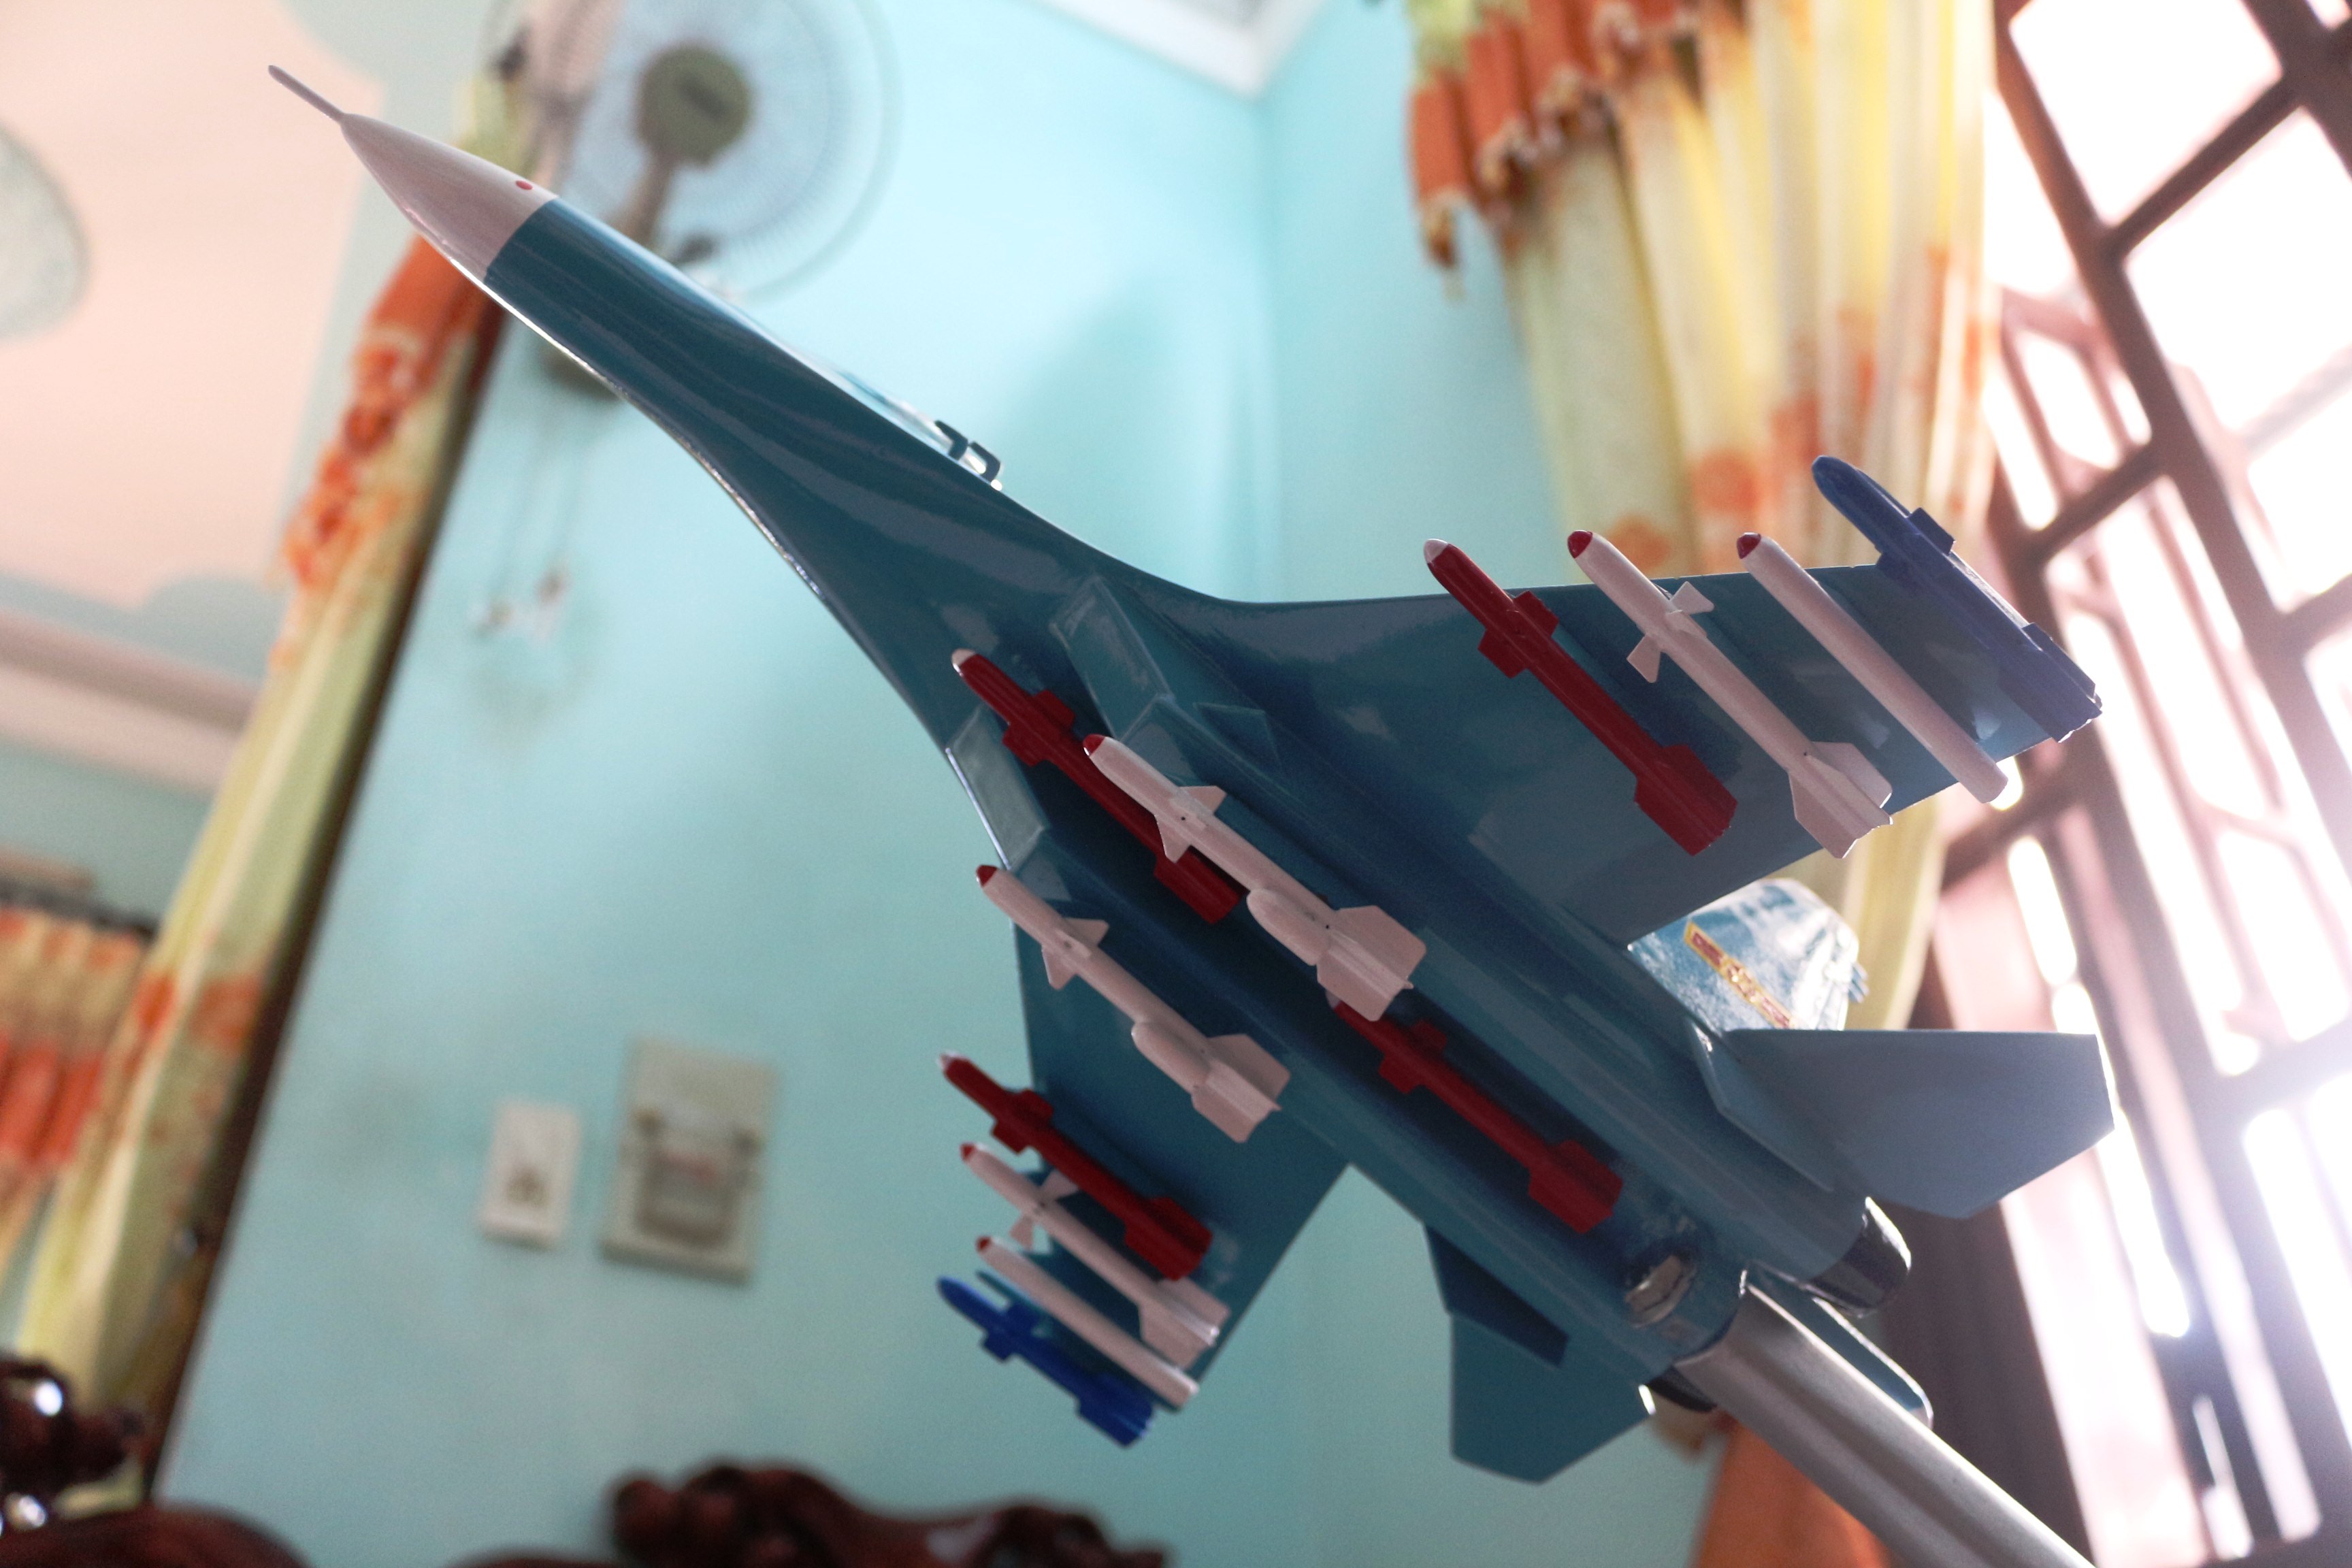 Mô hình máy bay chiến đấu: Đến với thế giới của những mô hình máy bay chiến đấu, bạn sẽ được khám phá vẻ đẹp và tinh tế của những sản phẩm được làm thủ công đầy kỹ thuật và tài năng. Hình ảnh sống động sẽ khiến bạn có cảm giác như đang ngắm nhìn những chiếc máy bay thực sự đang lao về phía trước.